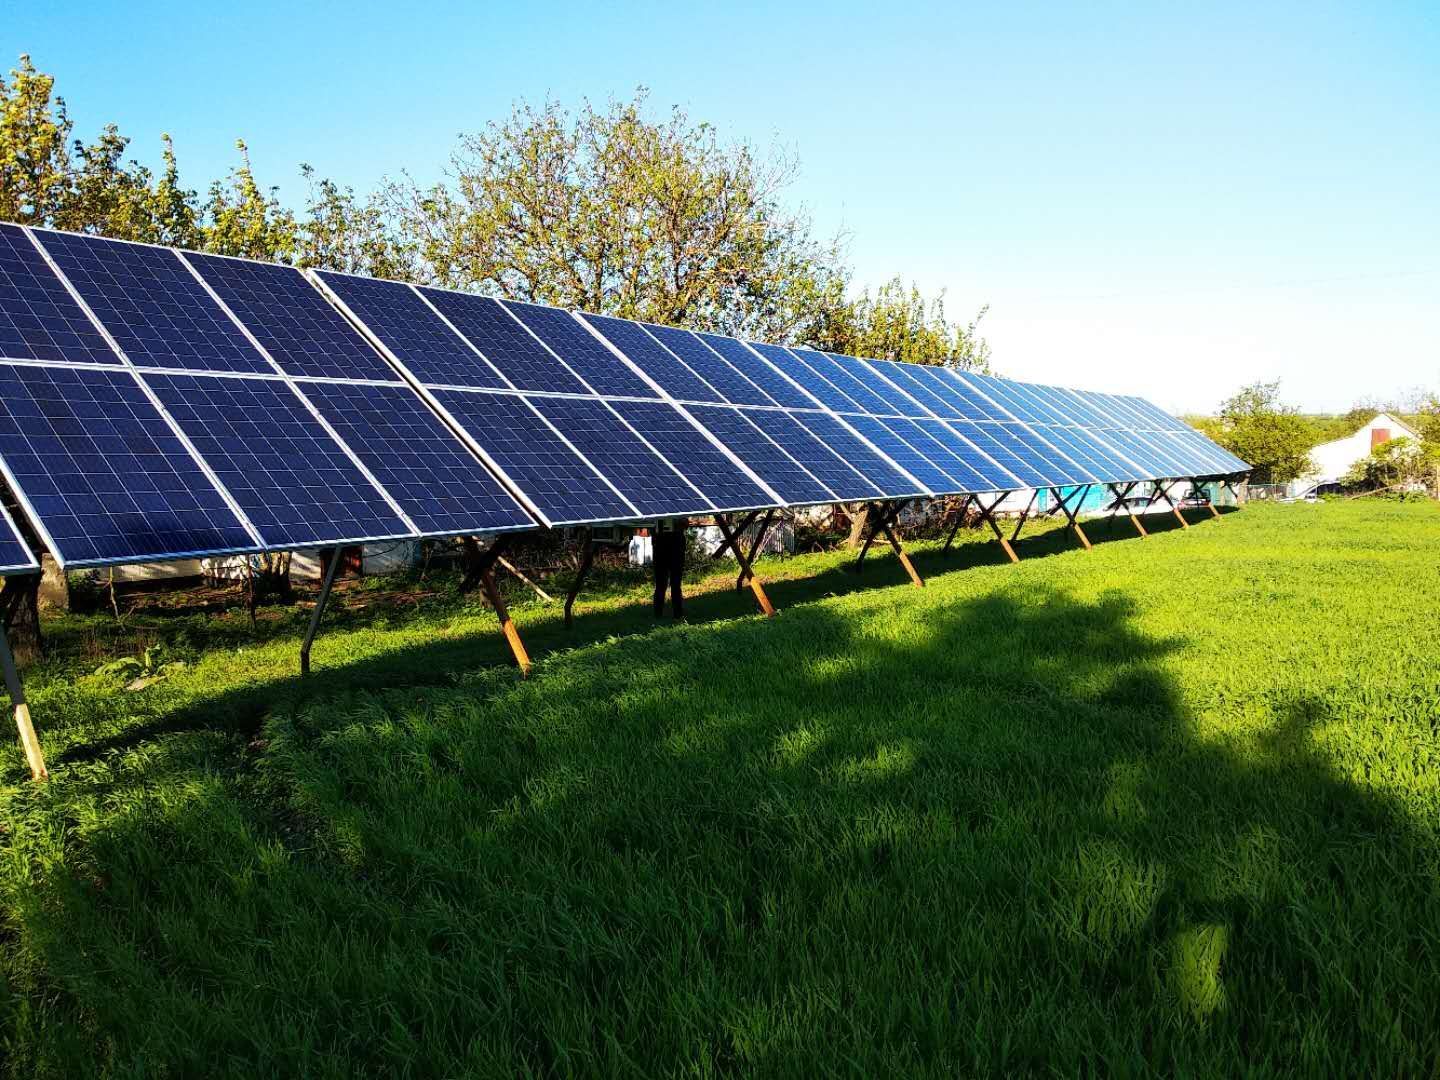 Пример солнечной подстанции на 35кВ, которая может подойти для использования пограничной заставой на прилегающей к ней территории. Стоимость оценивается приблизительно в 10 тысяч евро © Bahna